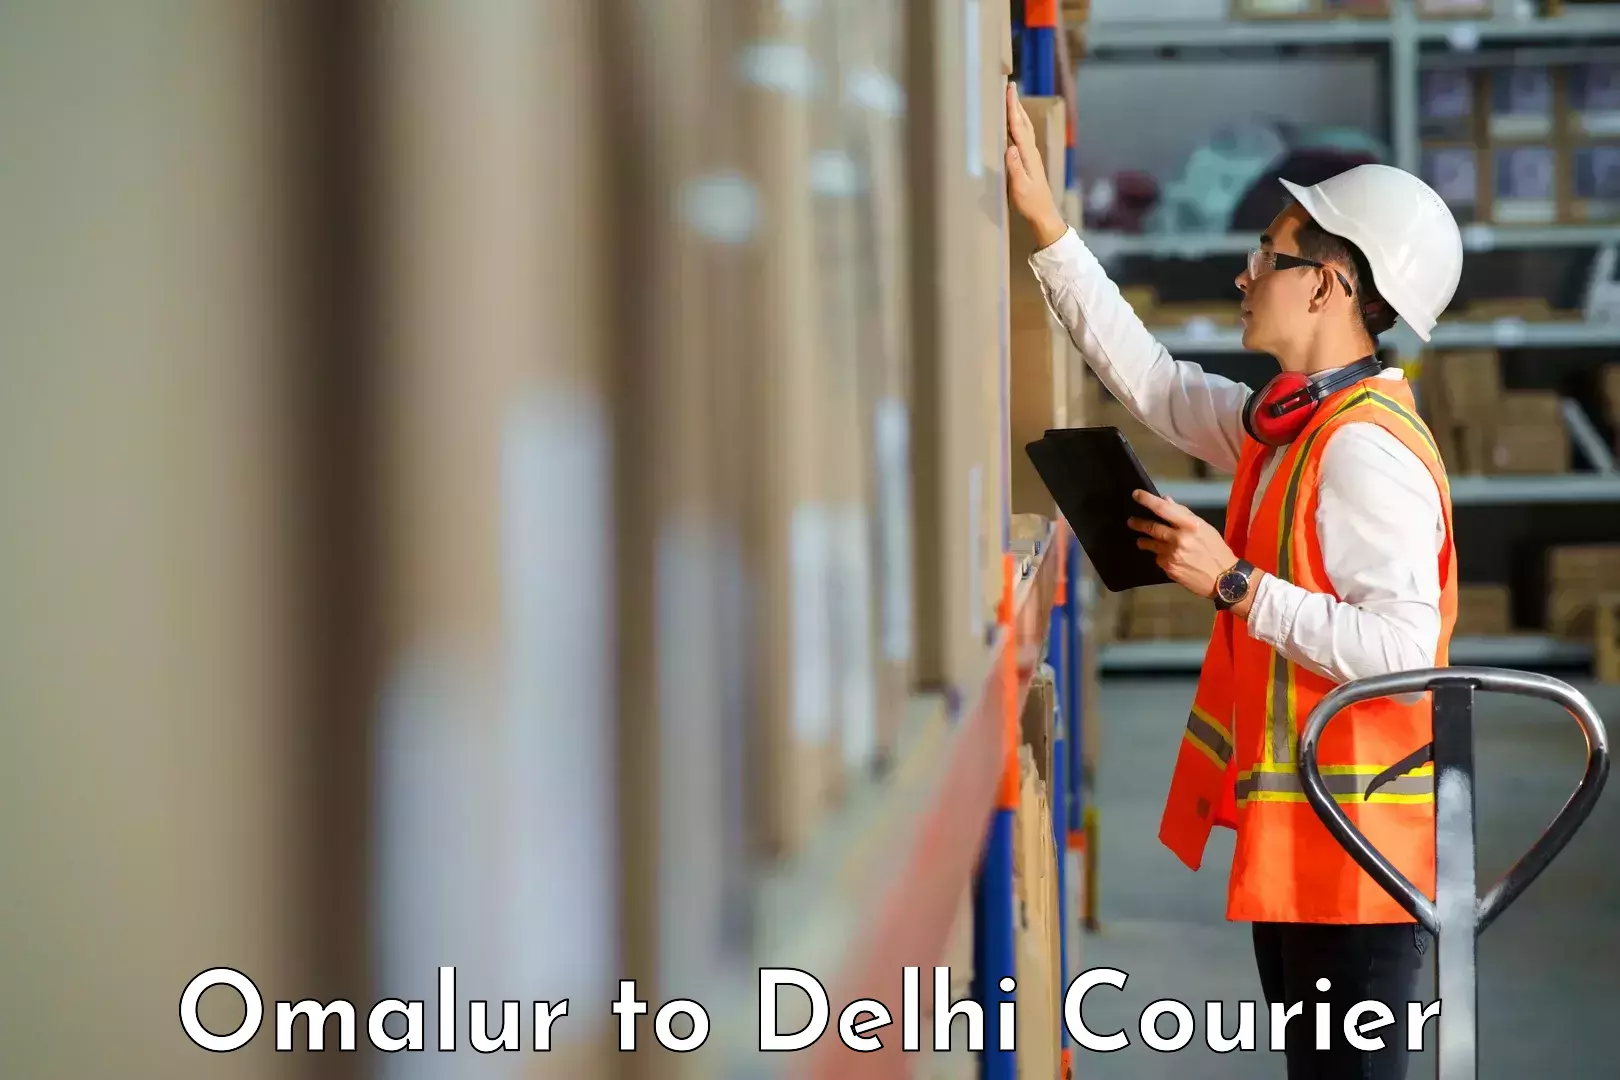 Courier rate comparison in Omalur to Delhi